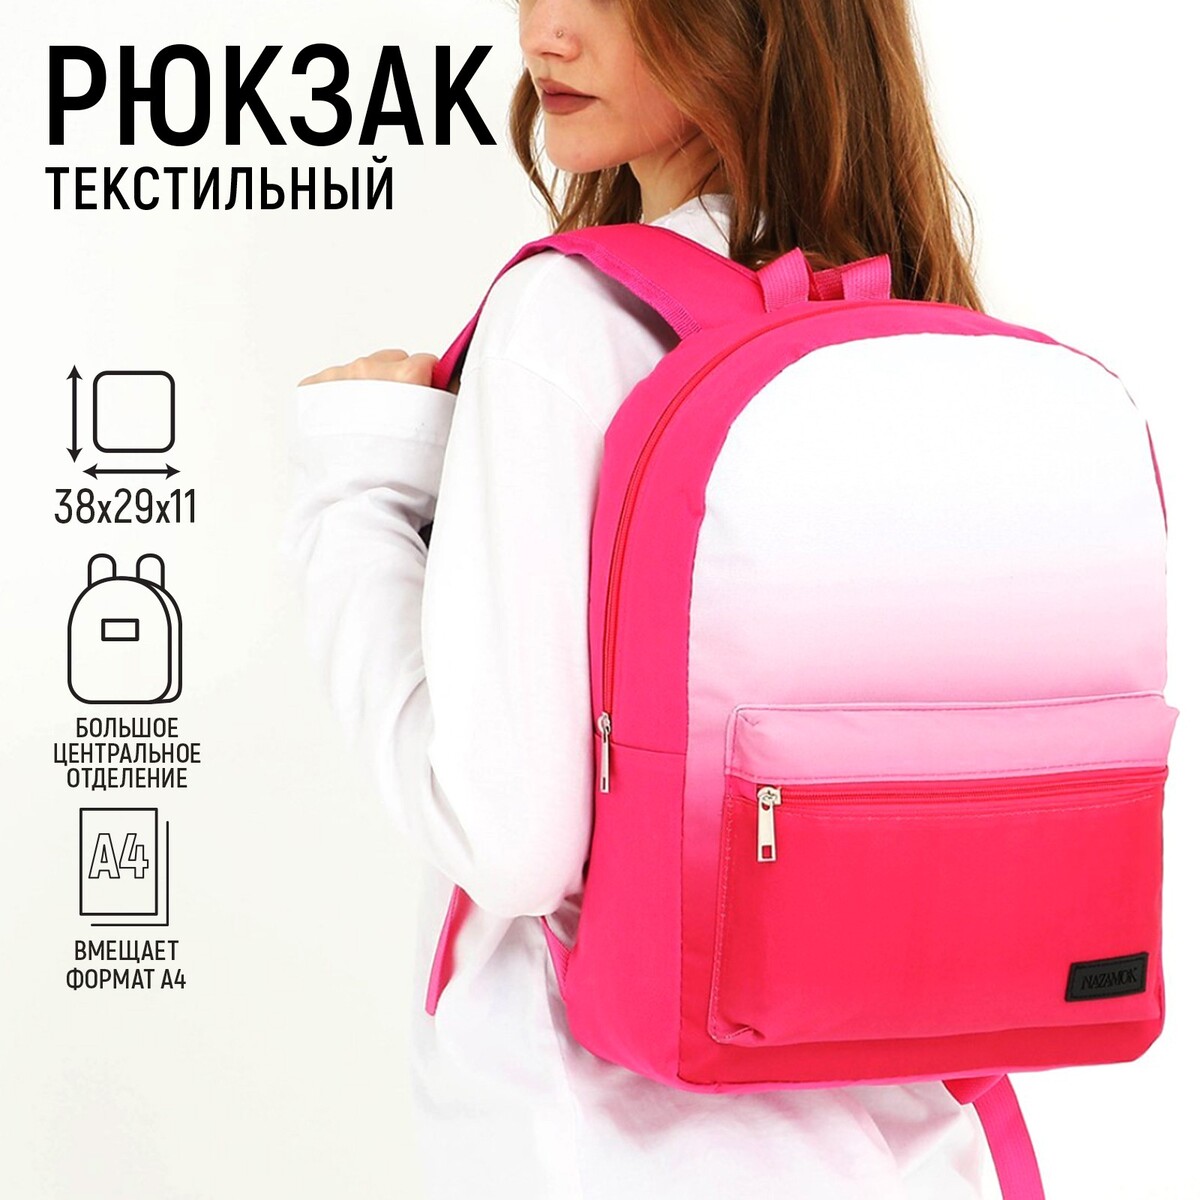 Рюкзак текстильный с белым градиентом, 38х29х11 см, 38 х цвет розовый розовый, отдел на молнии, цвет красный рюкзак текстильный с белым градиентом 38х29х11 см 38 х розовый розовый отдел на молнии красный